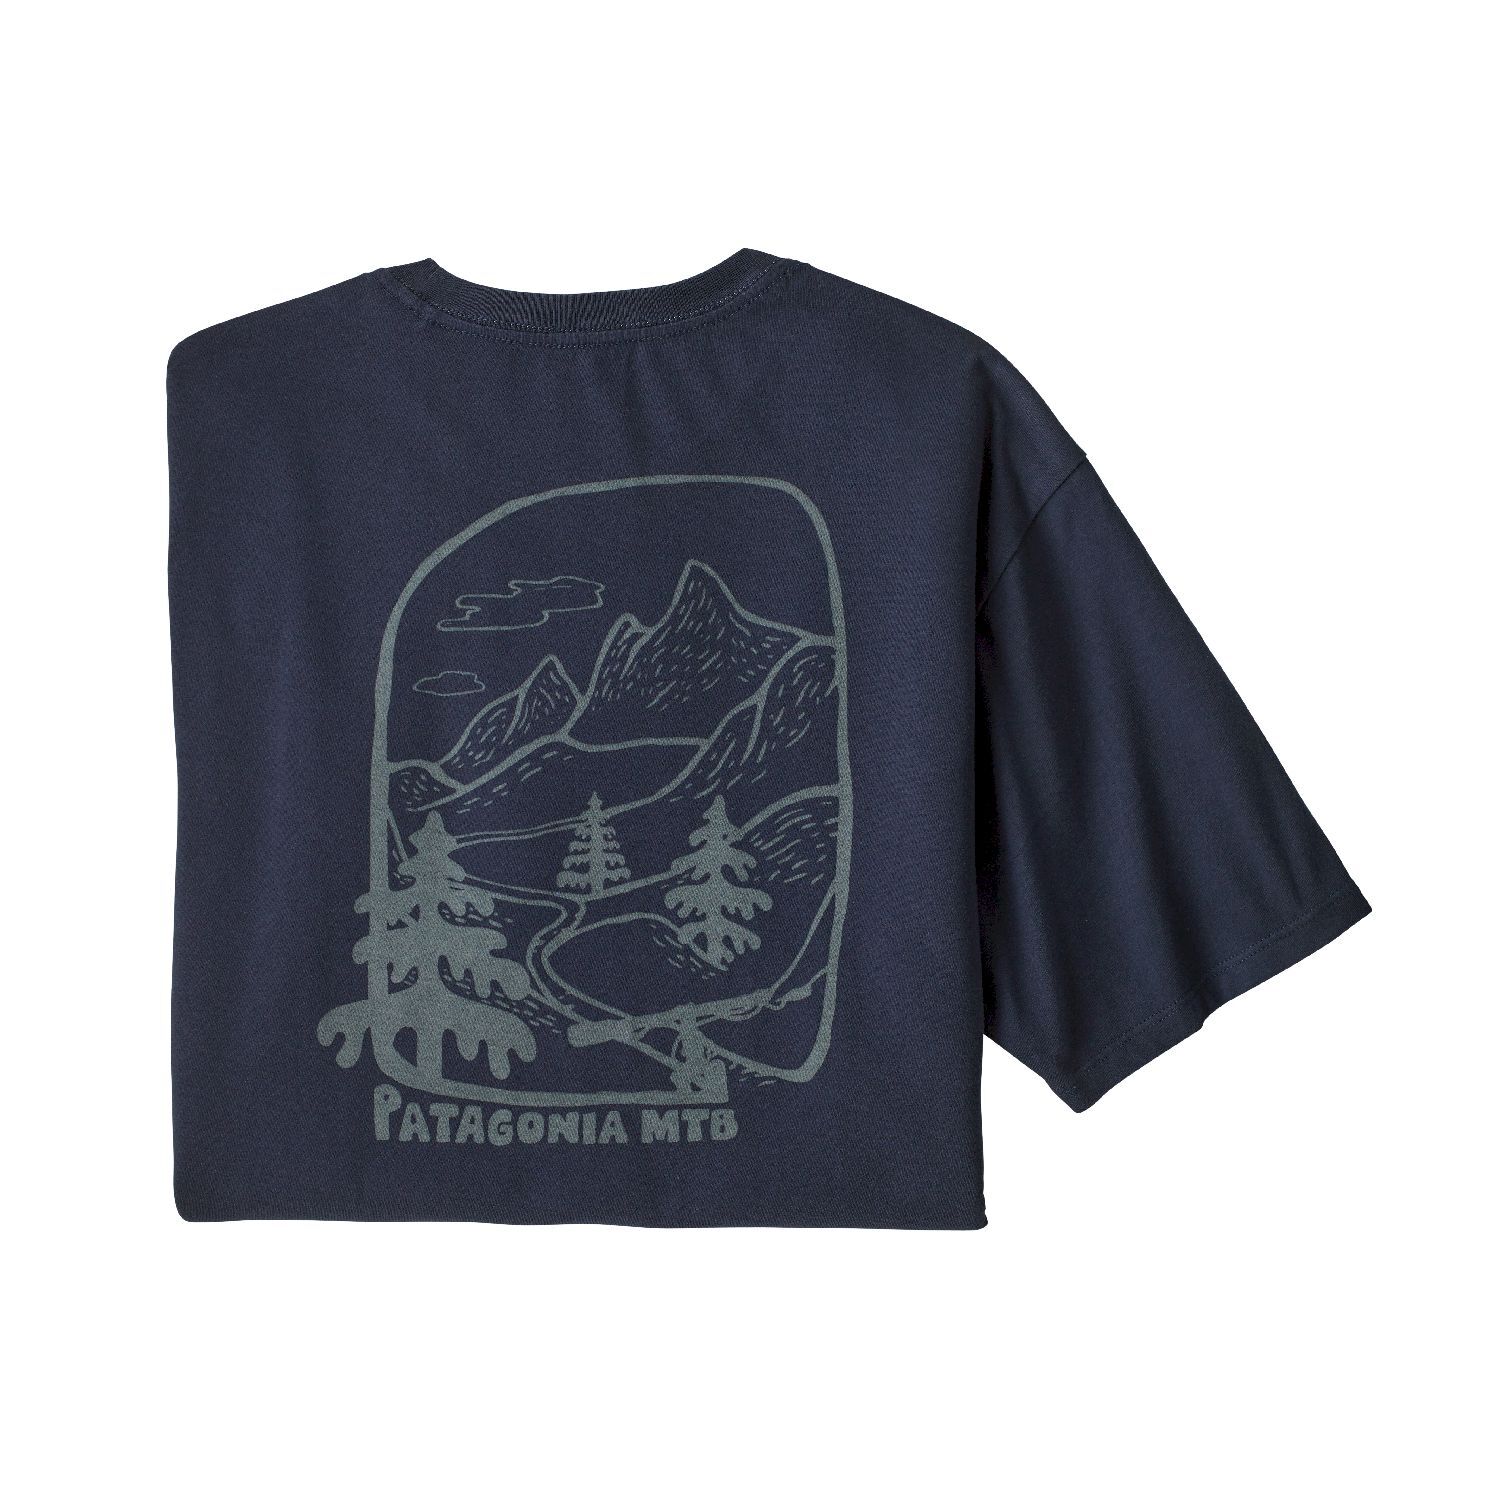 Patagonia Roam the Dirt Organic - T-shirt - Men's